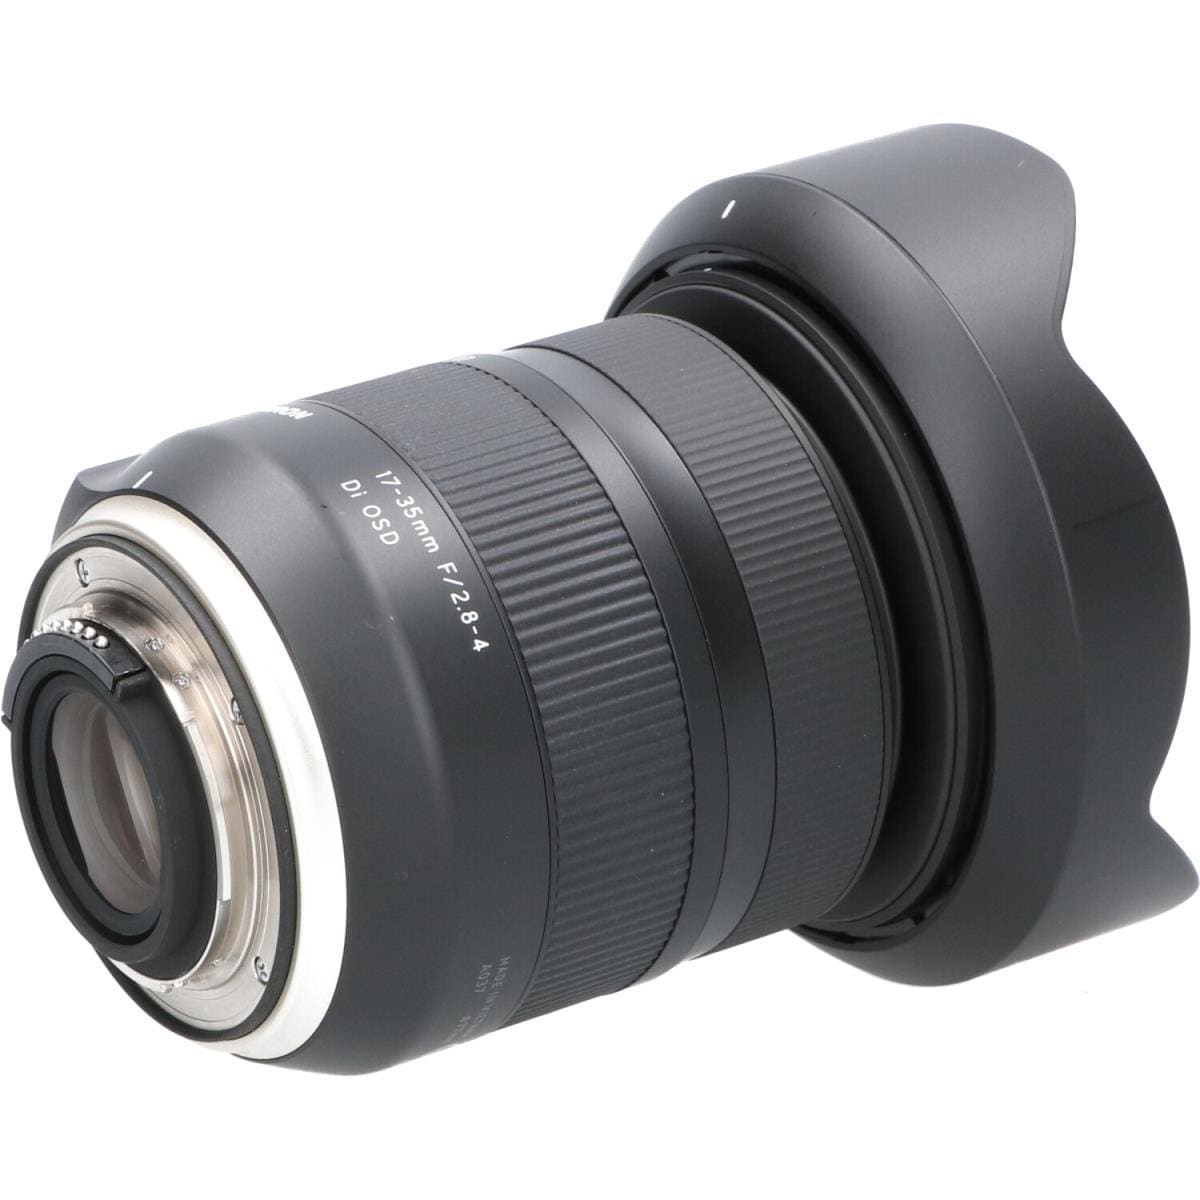 TAMRON Nikon 17-35mm F2.8-4DI OSD A037